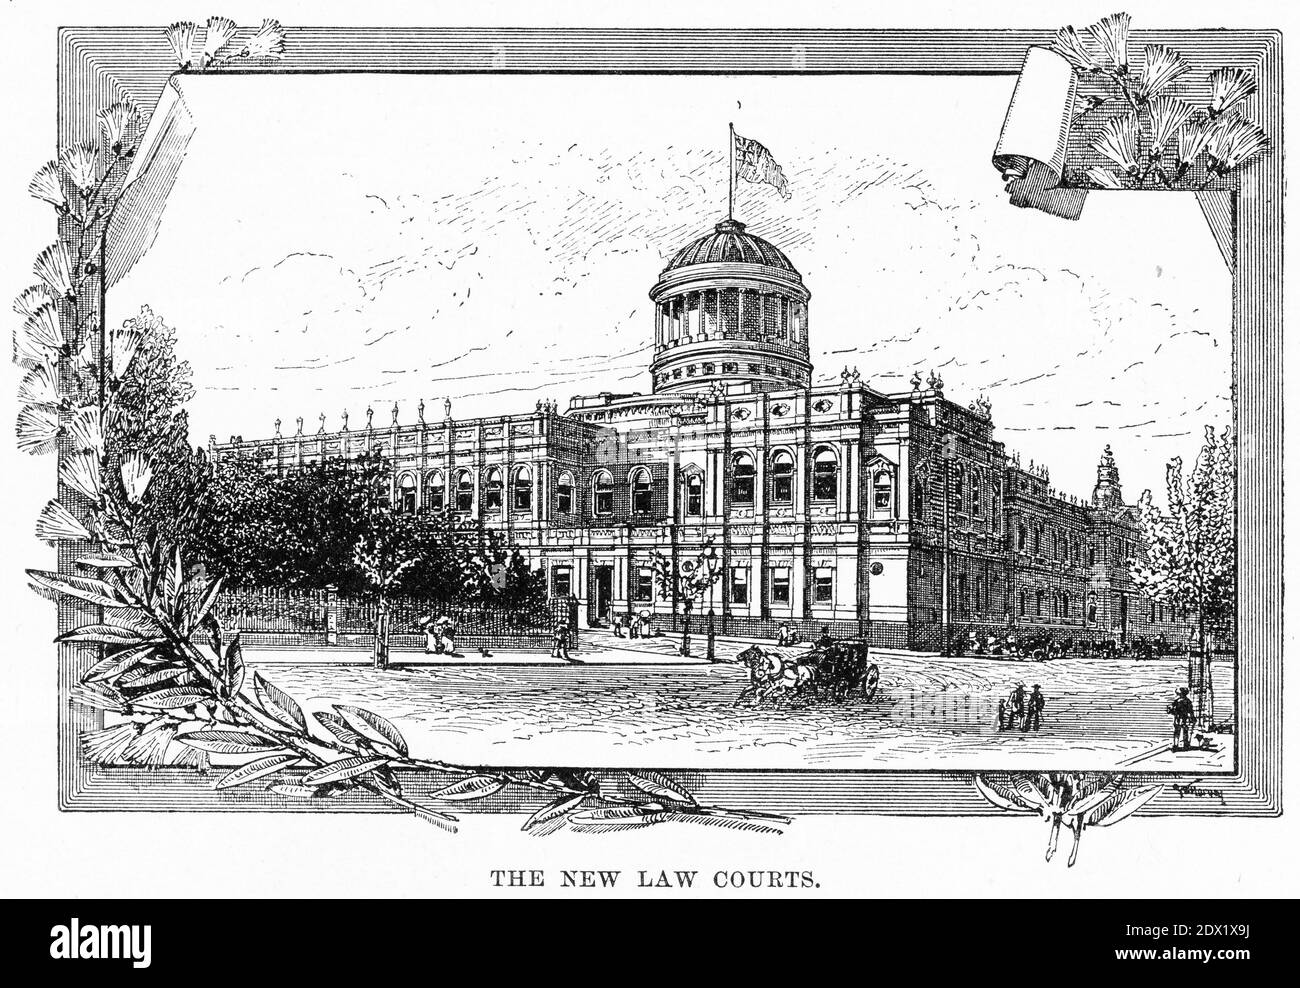 Gravure des nouveaux tribunaux de Melbourne, Victoria, Australie, vers 1880 Banque D'Images